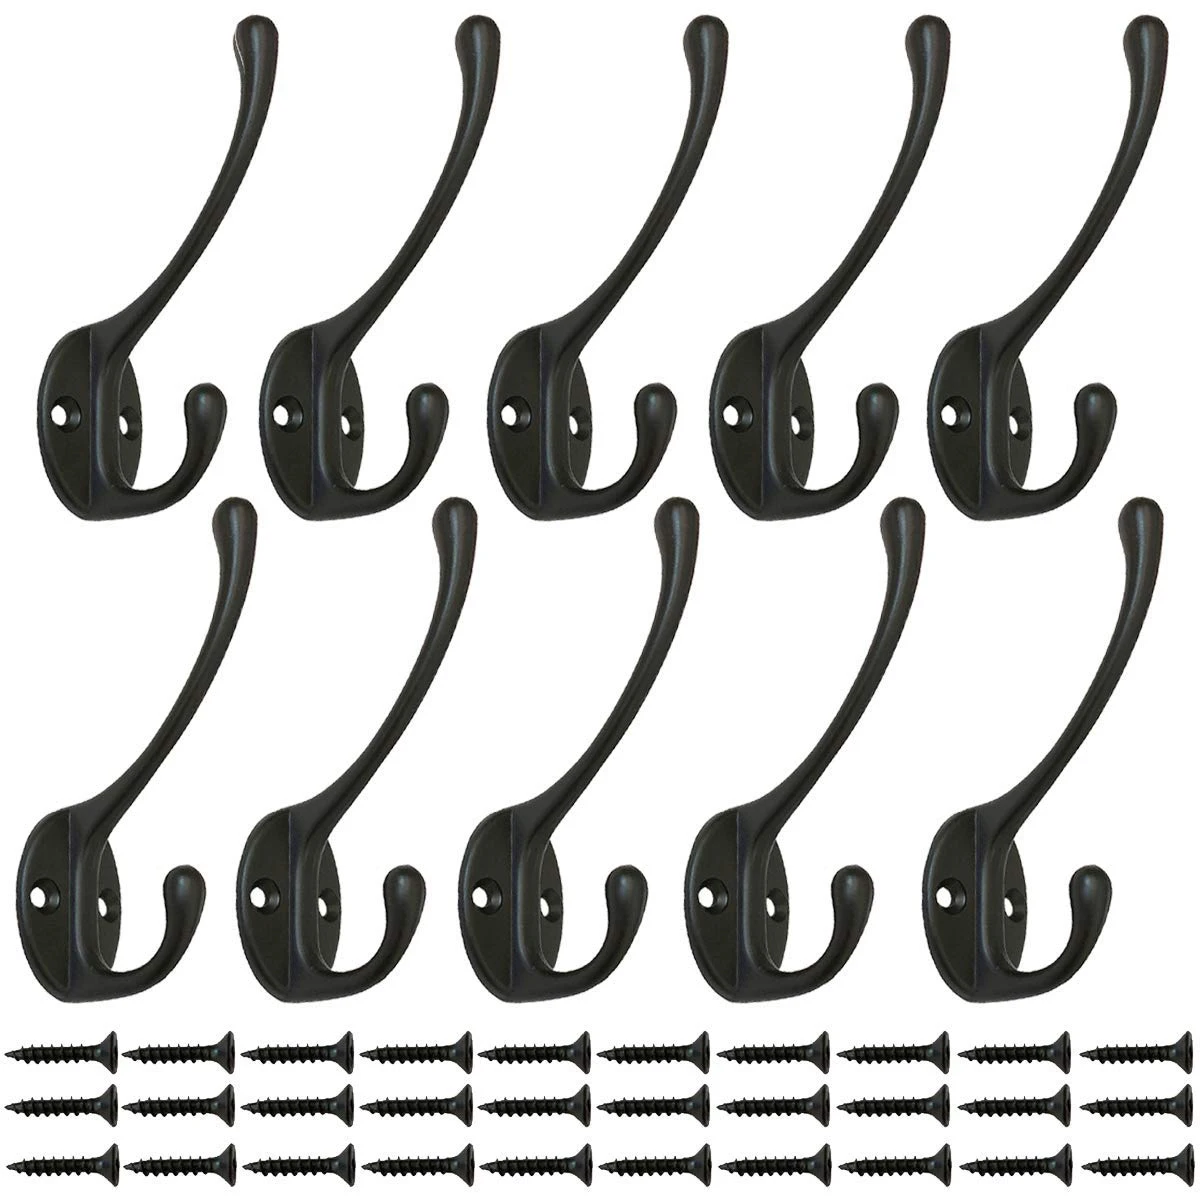 Heavy Duty Coat Hooks 10 Pack Wall Mounted Hooks Metal Hooks Dual Robe Hook Rustic Hooks Heavy Duty Dual Retro Double Hook...